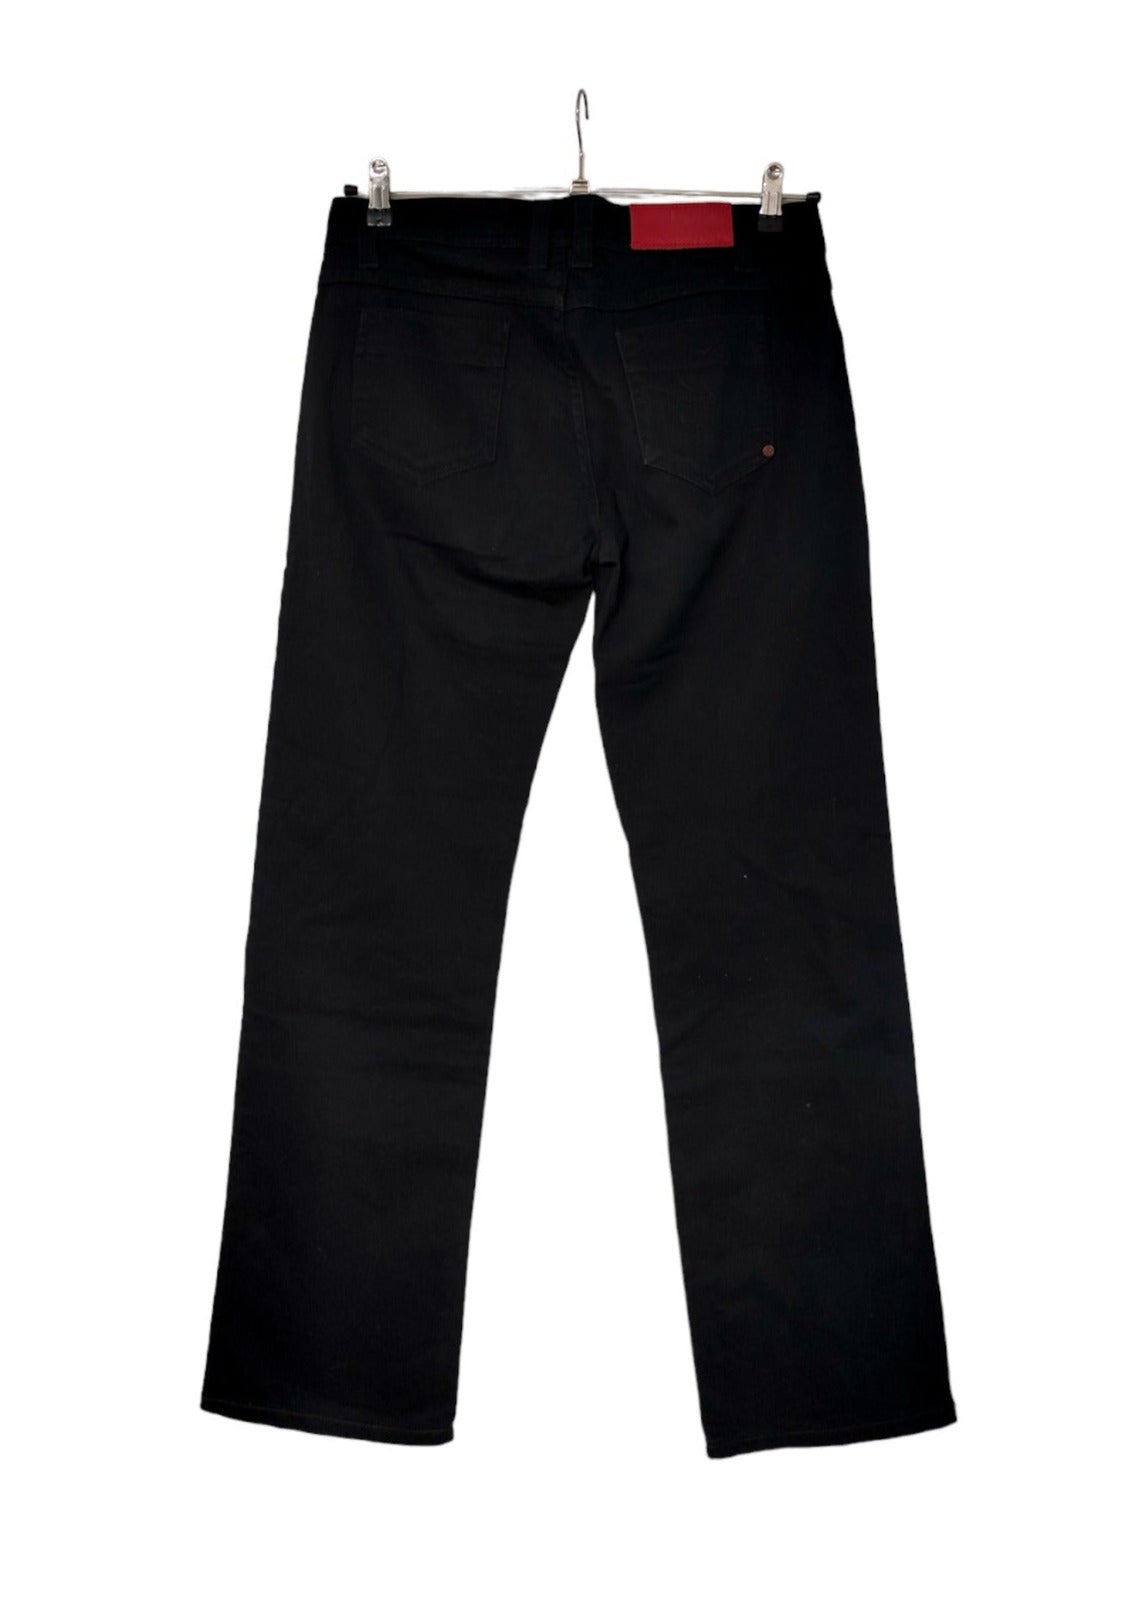 Γυναικείο Τζιν Παντελόνι PUMA σε Μαύρο χρώμα (Large - W31/L32)